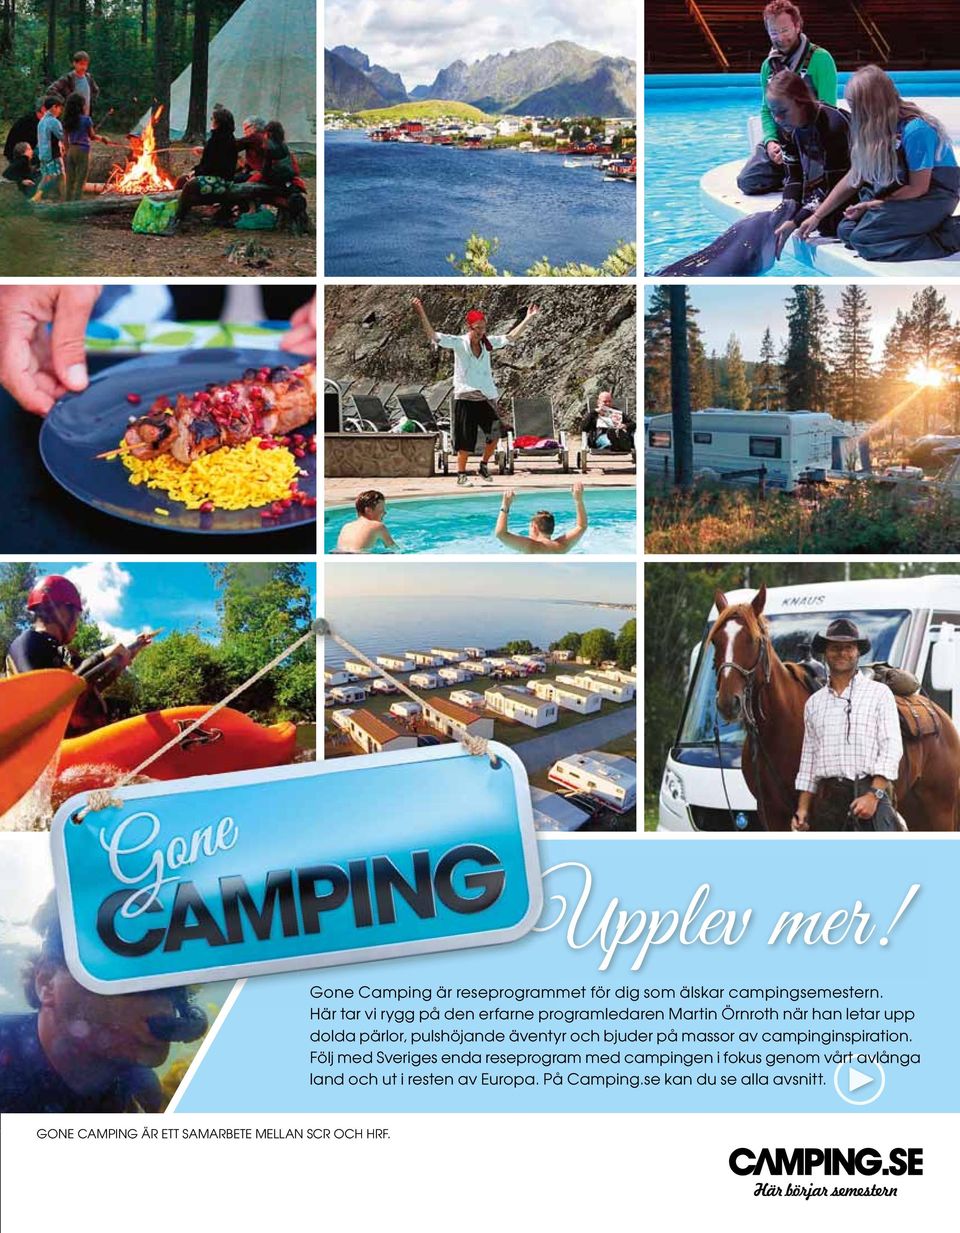 äventyr och bjuder på massor av camping inspiration.